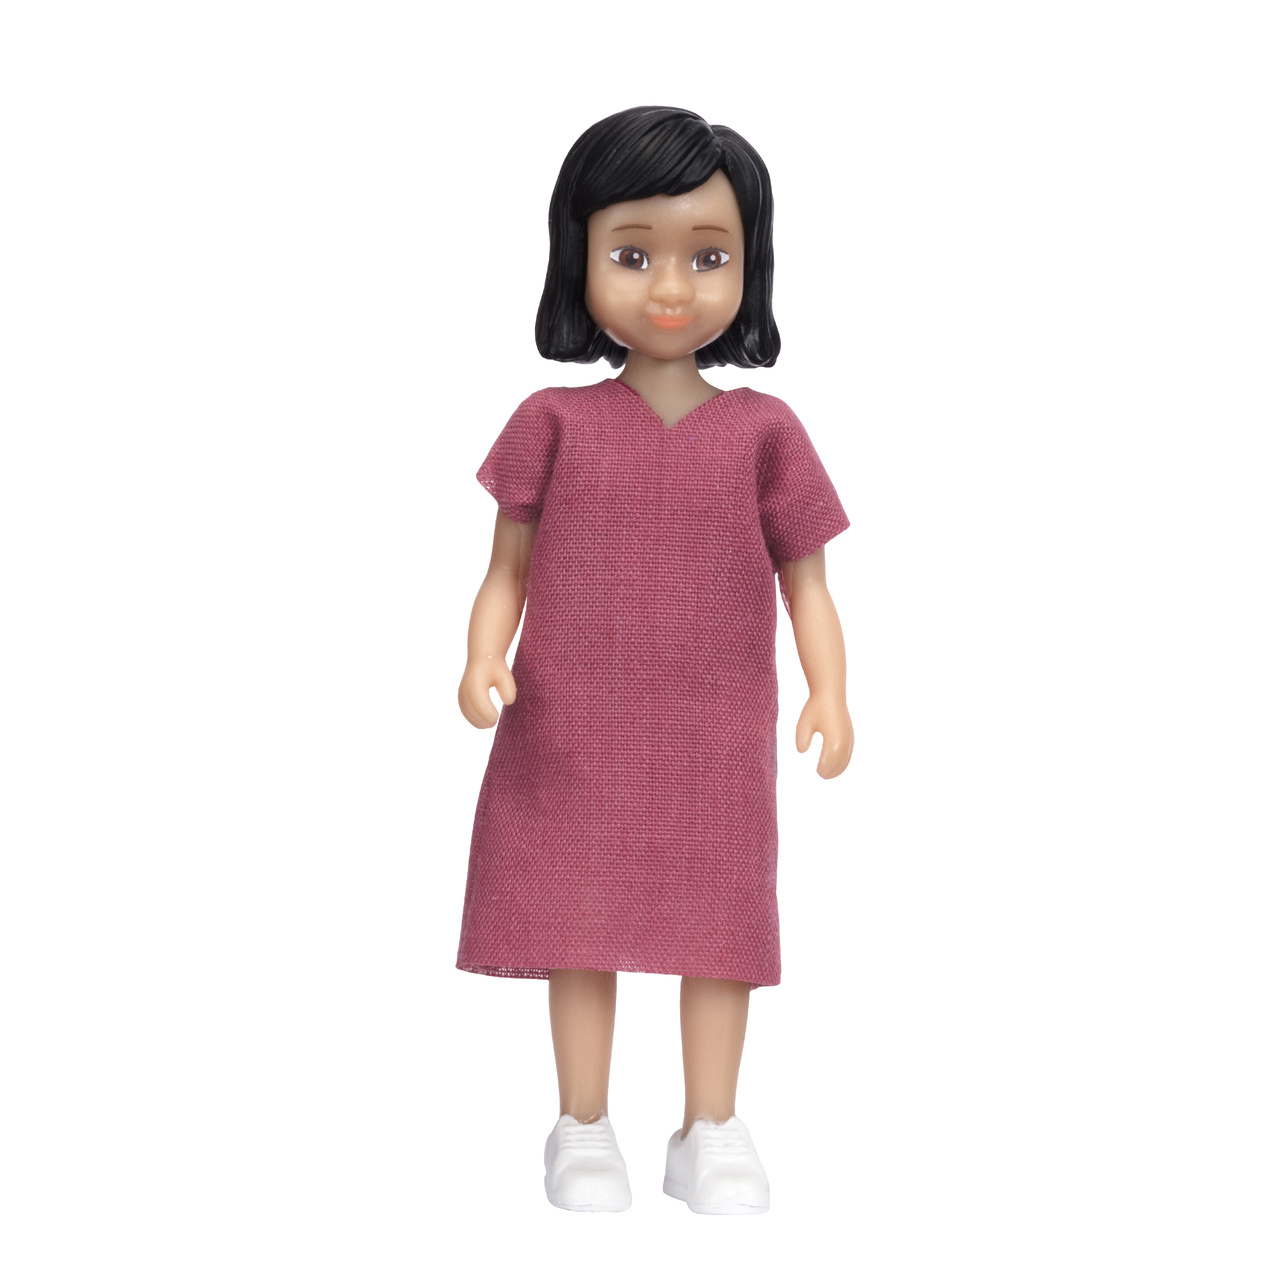 Dollhouse dolls & animals	 lundby dollhouse doll jamie girl